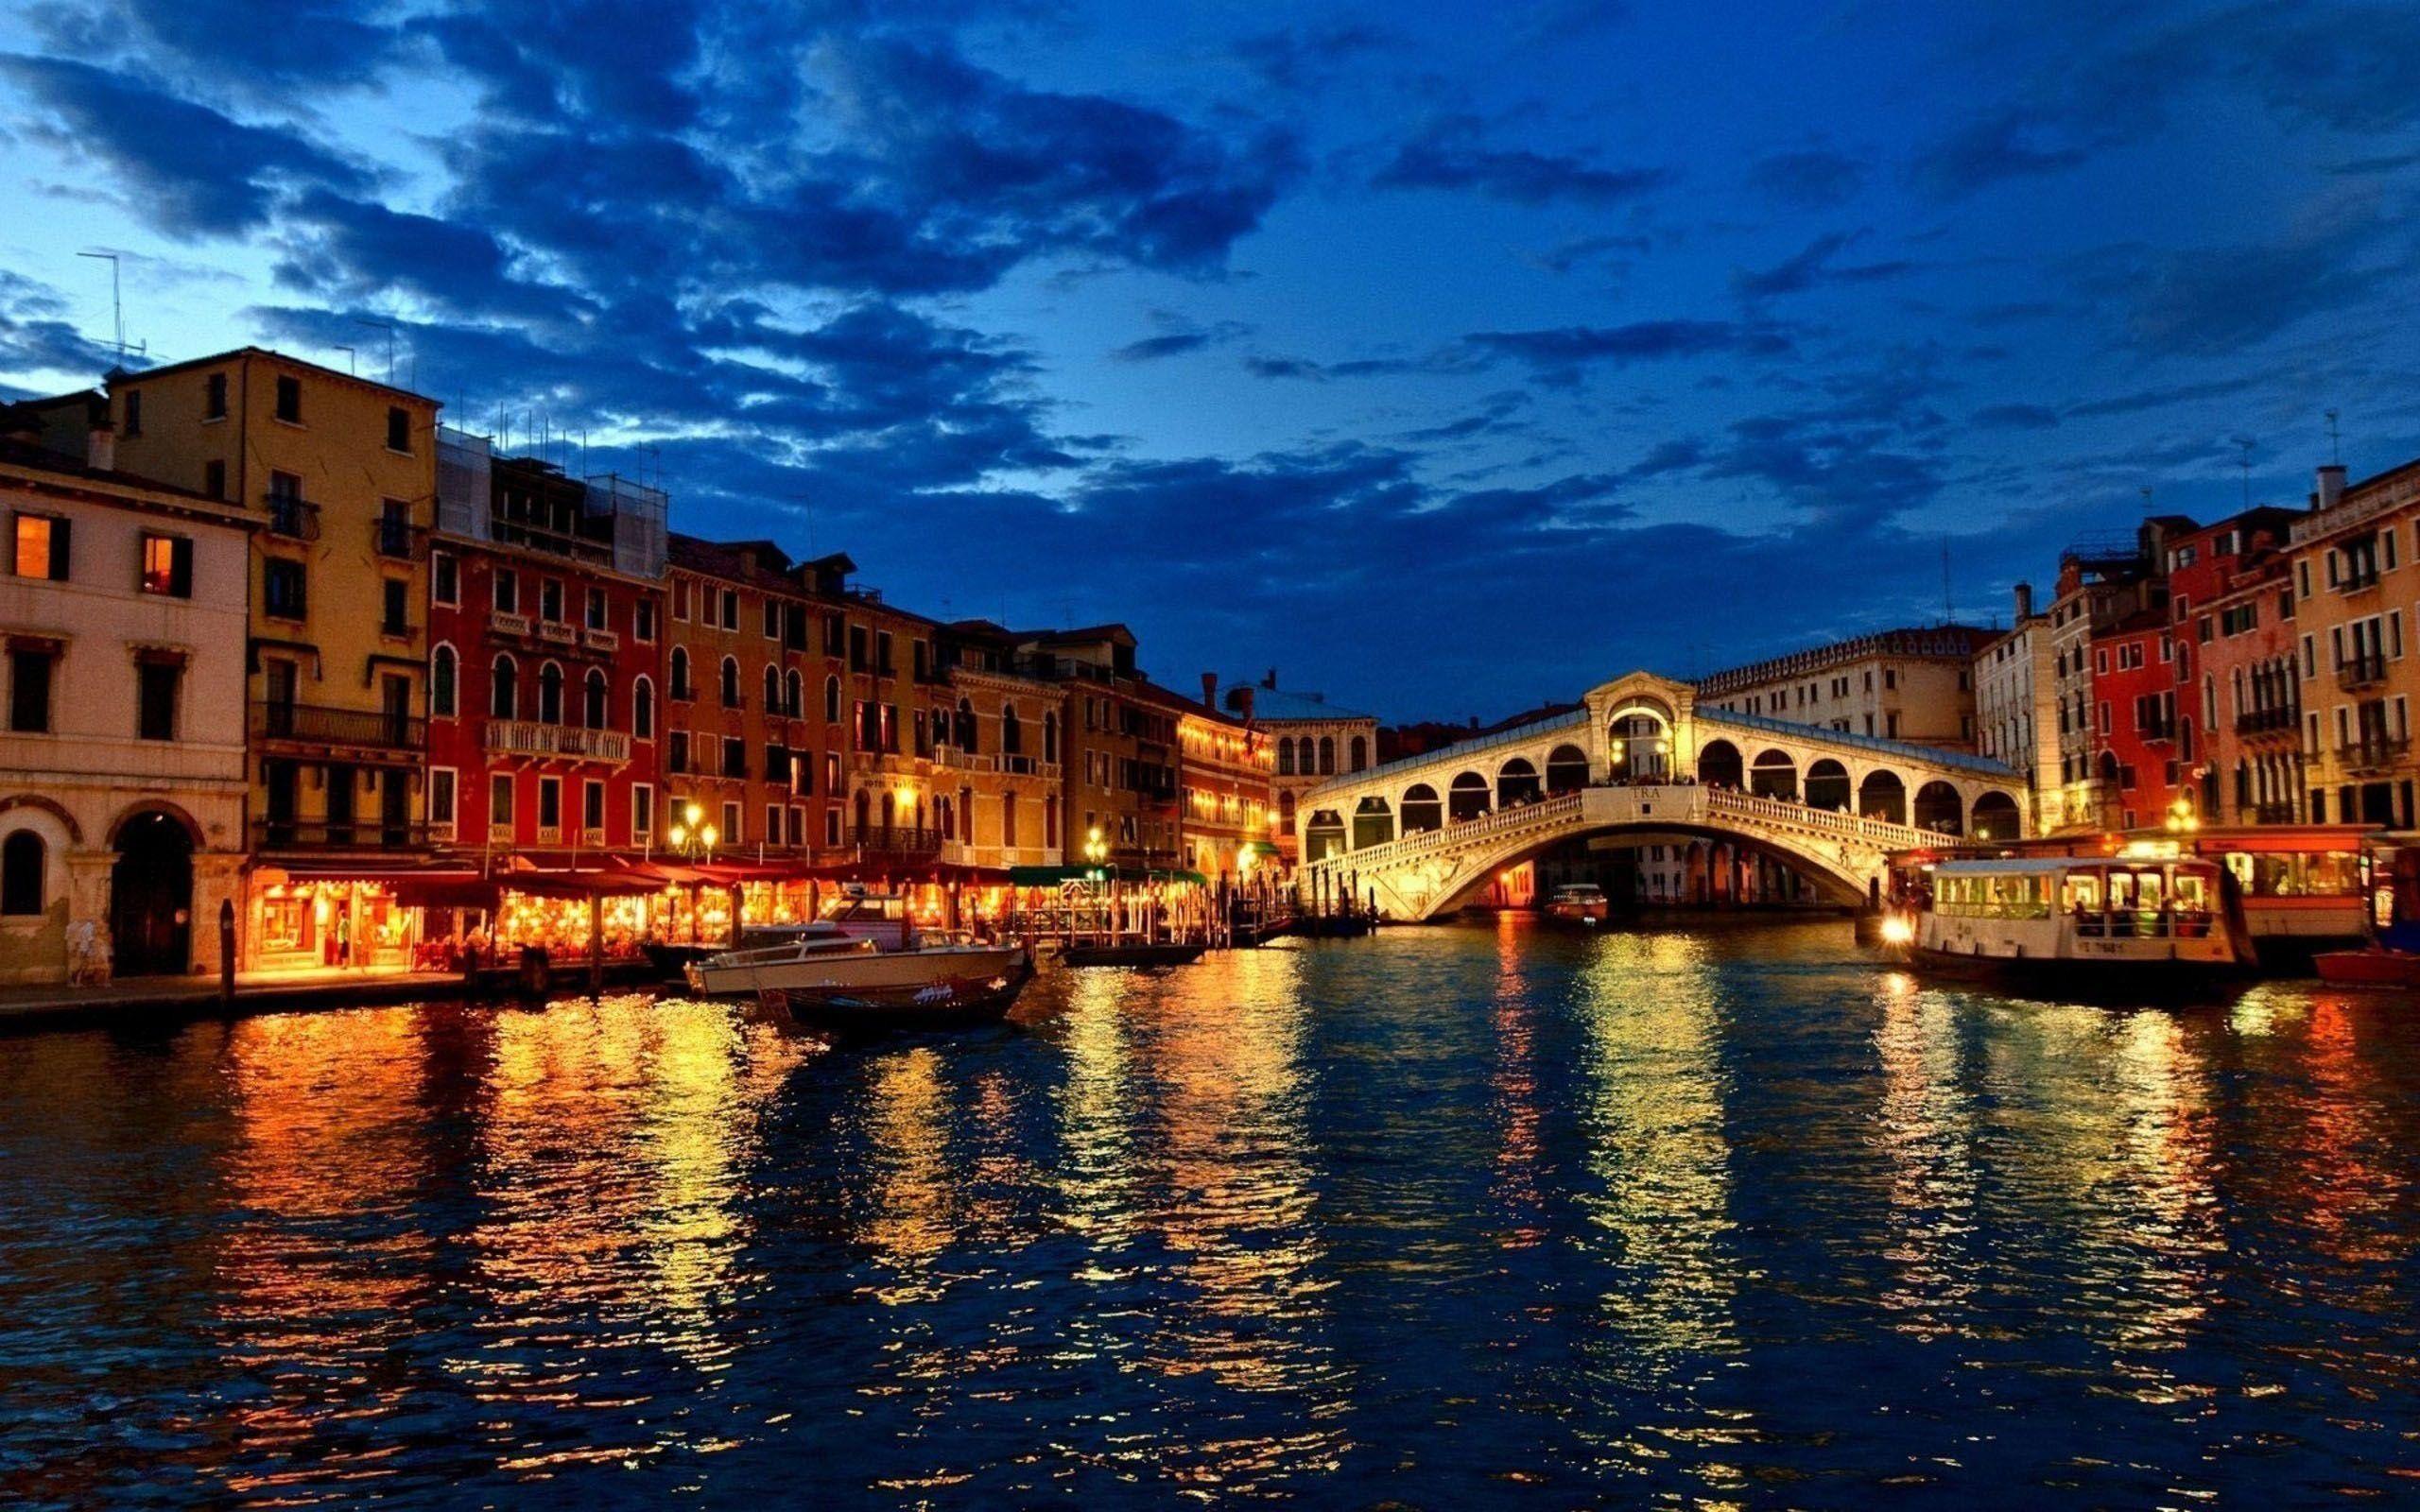 Italy at Night Wallpaper Free